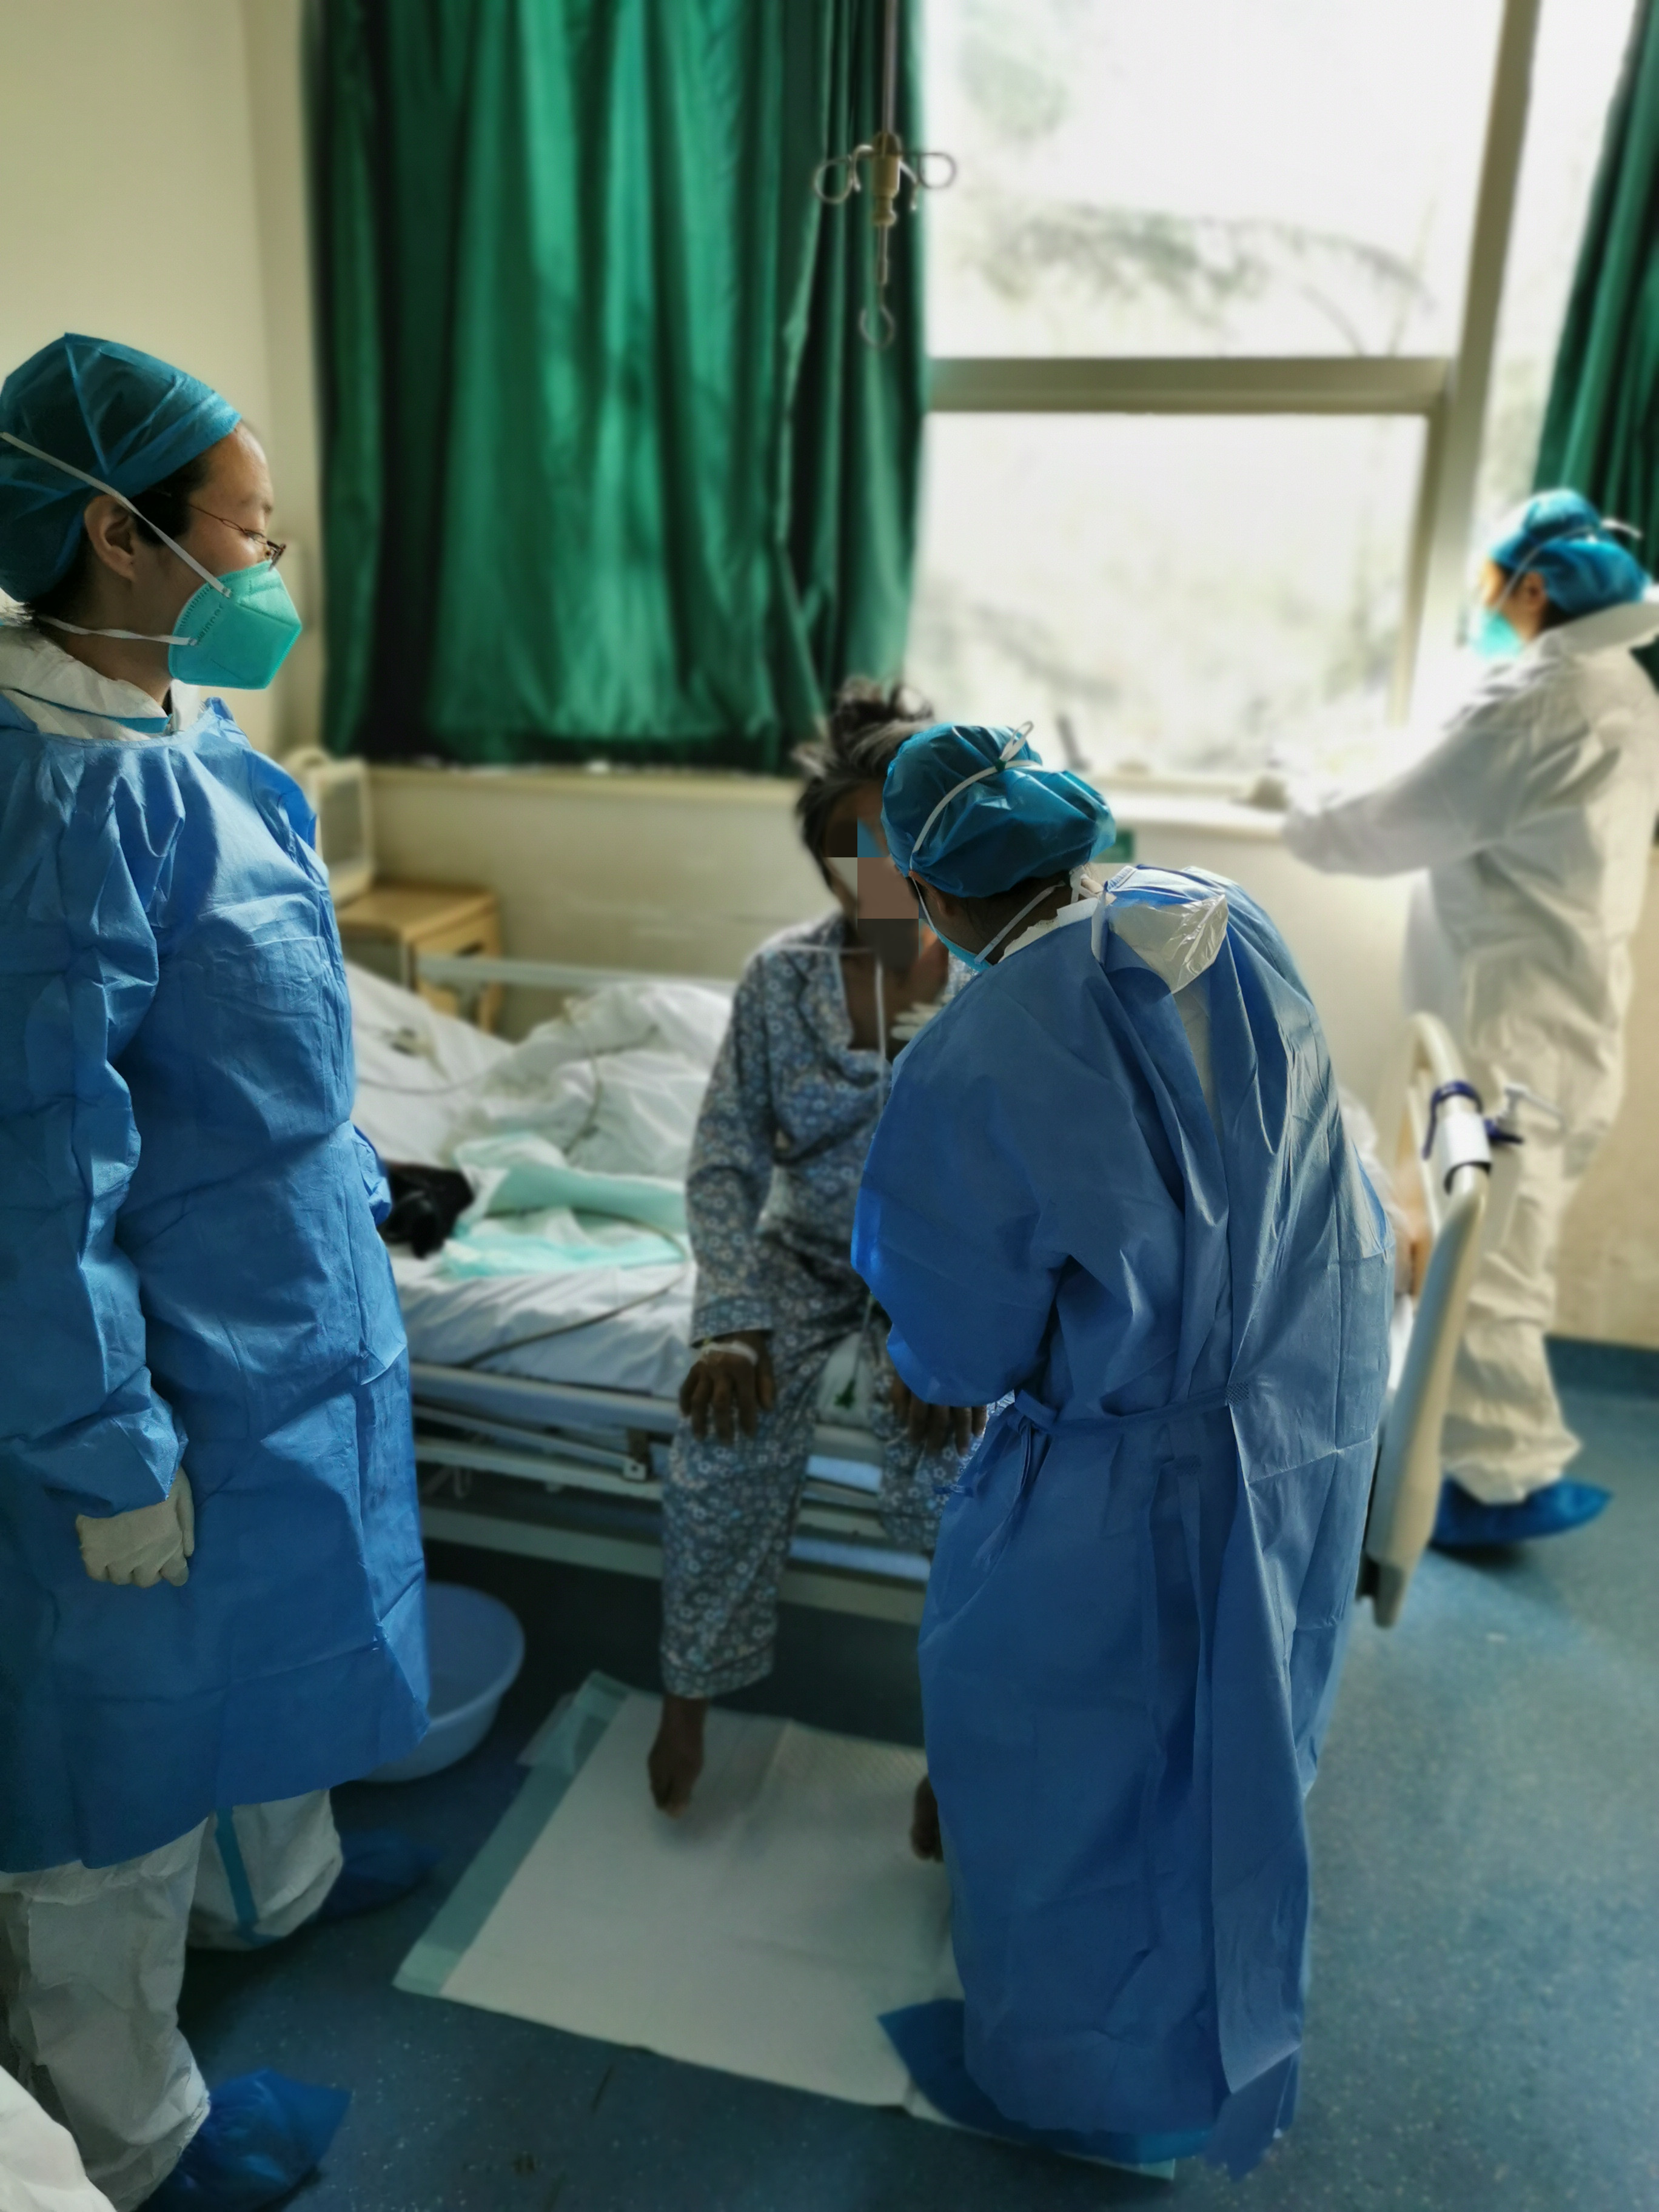 六旬婆婆小伤口拖成重度破伤风 武汉大学人民医院重症医学医护团队精心救治 42 天